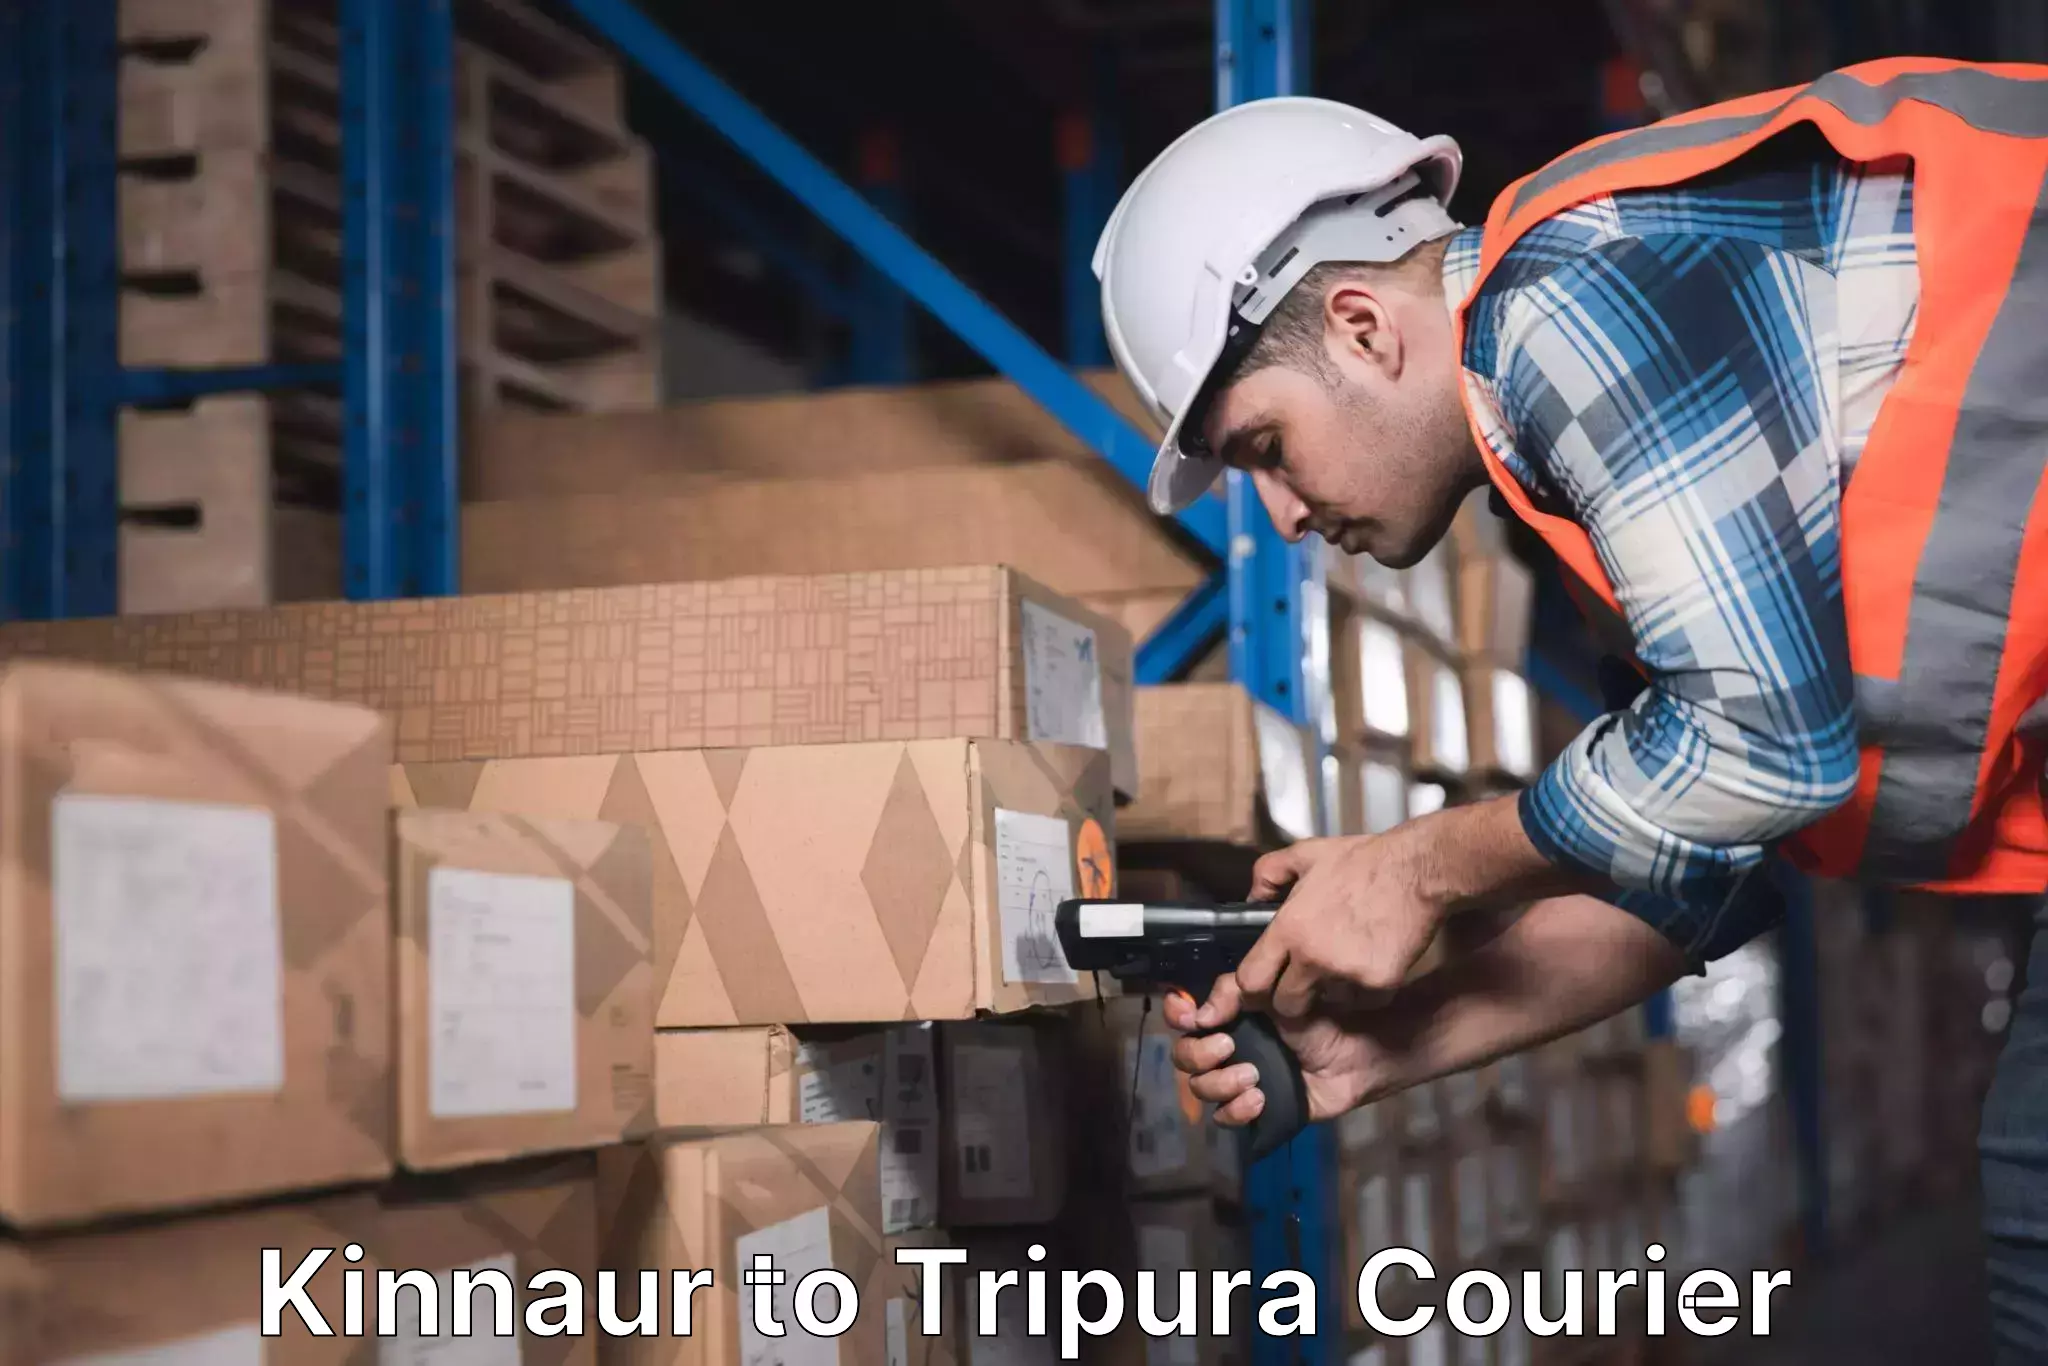 Professional courier handling Kinnaur to IIIT Agartala